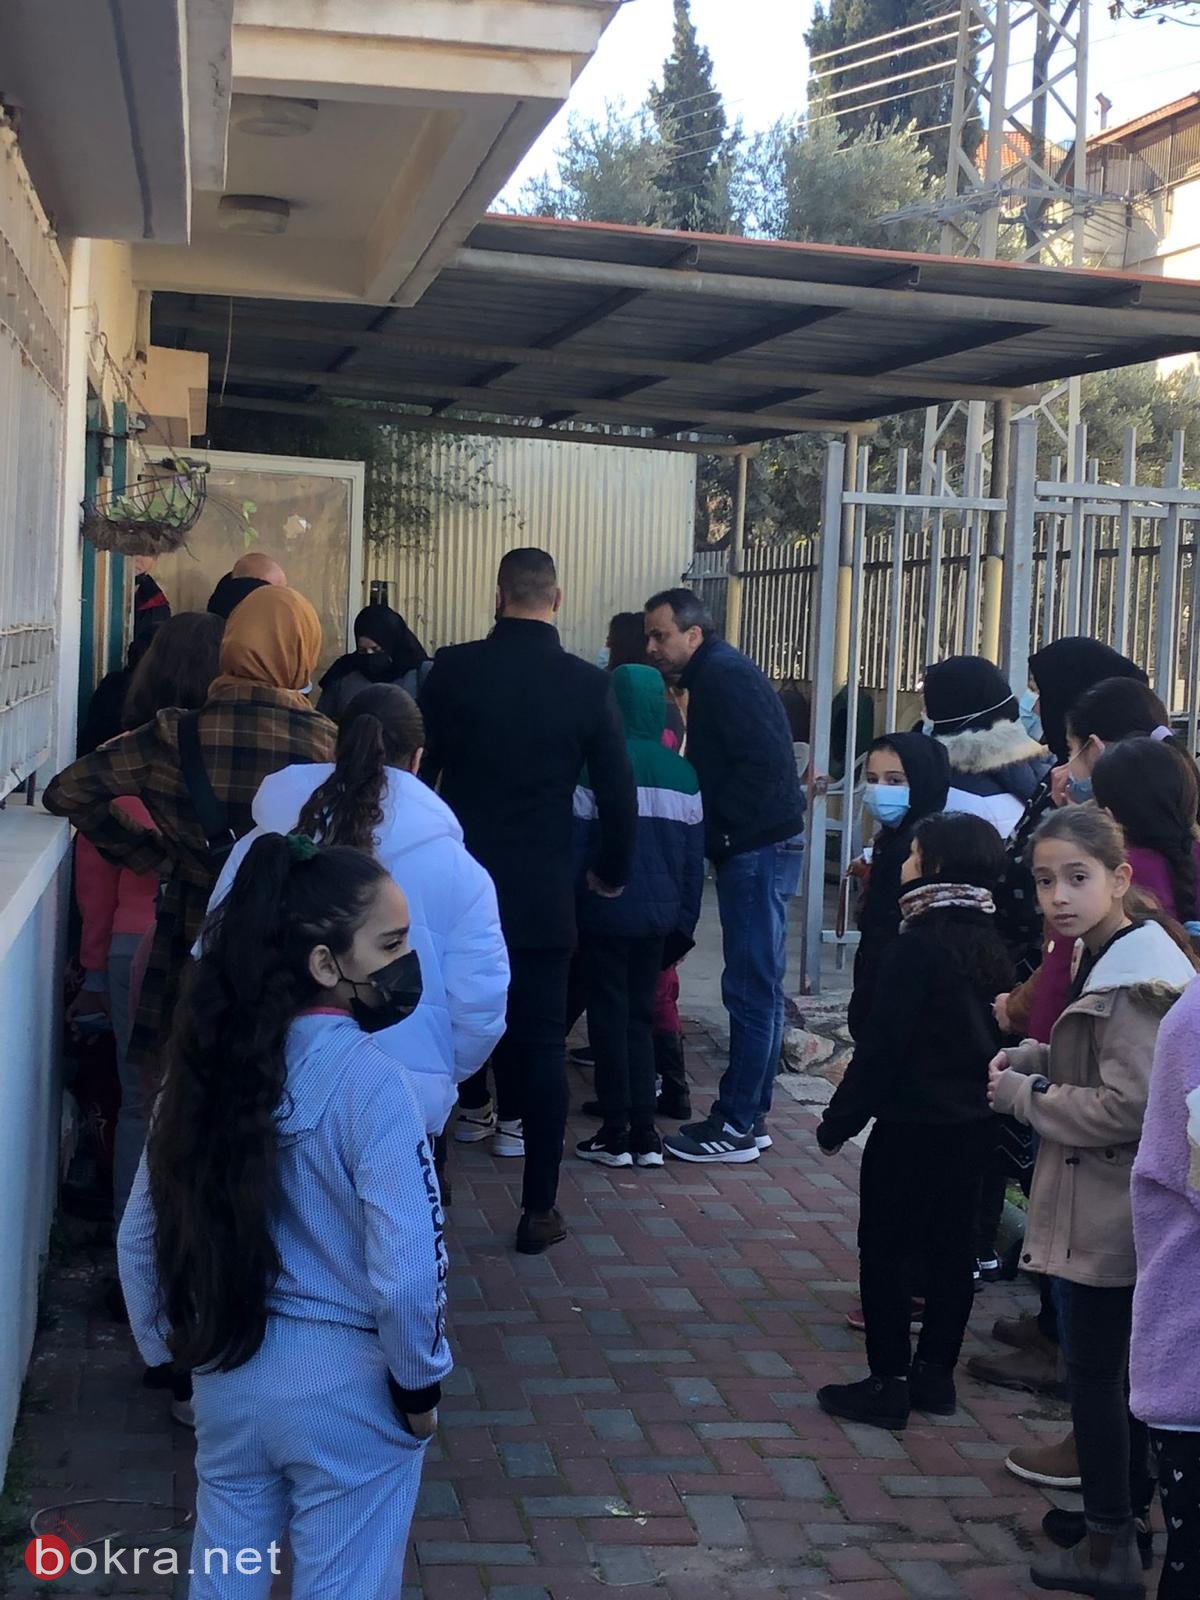 للعطاء صورٌ وأشكالٌ كثيرةٌ..في مدرسة بئر الامير الجماهرية في الناصرة-3